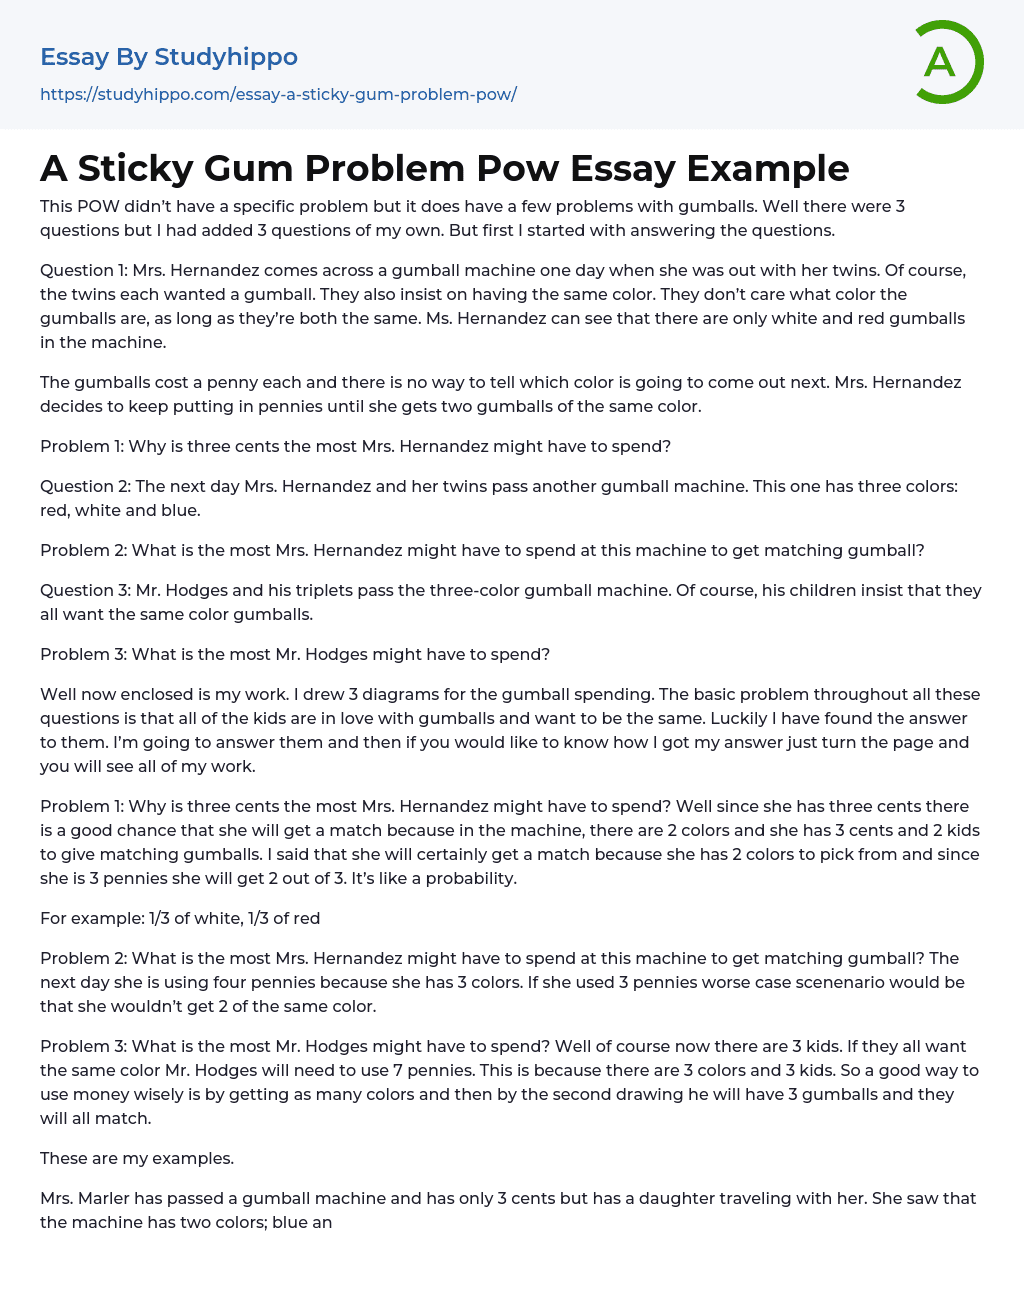 A Sticky Gum Problem Pow Essay Example